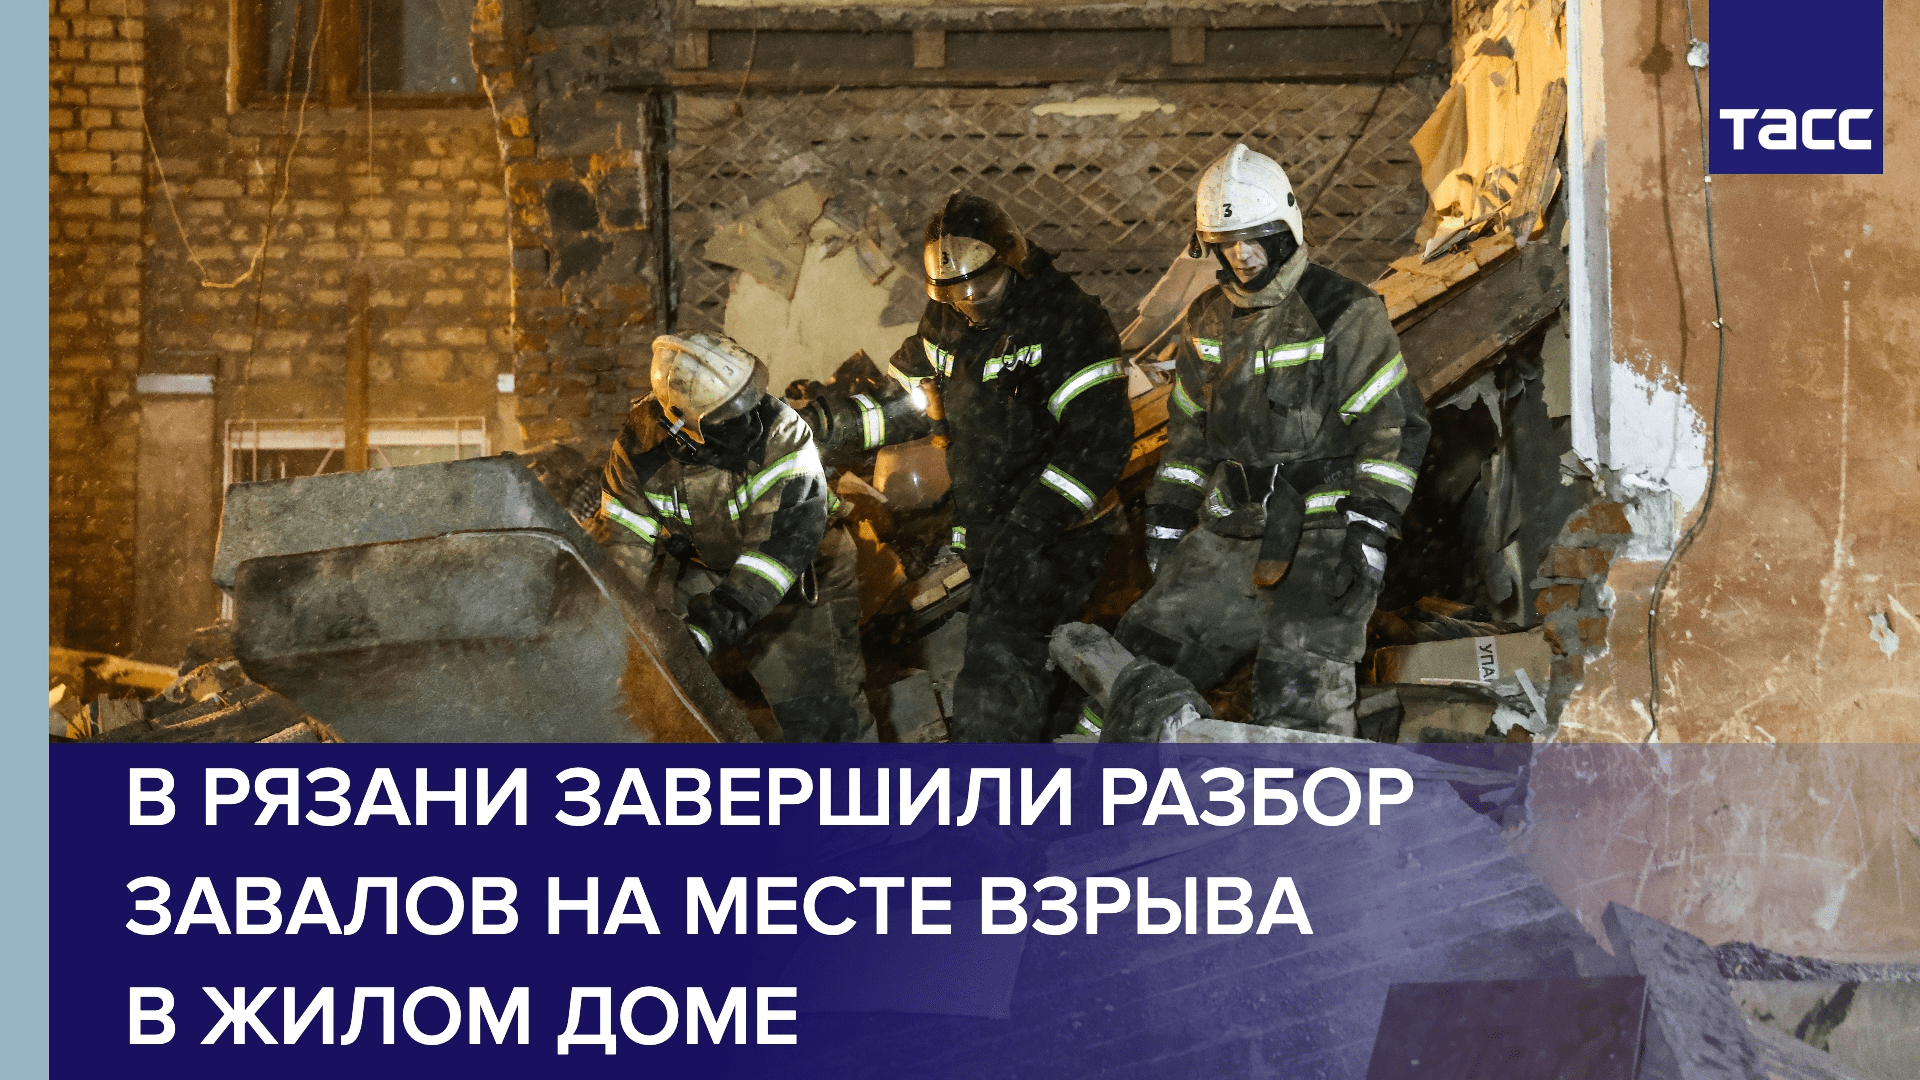 В Рязани завершили разбор завалов на месте взрыва в жилом доме